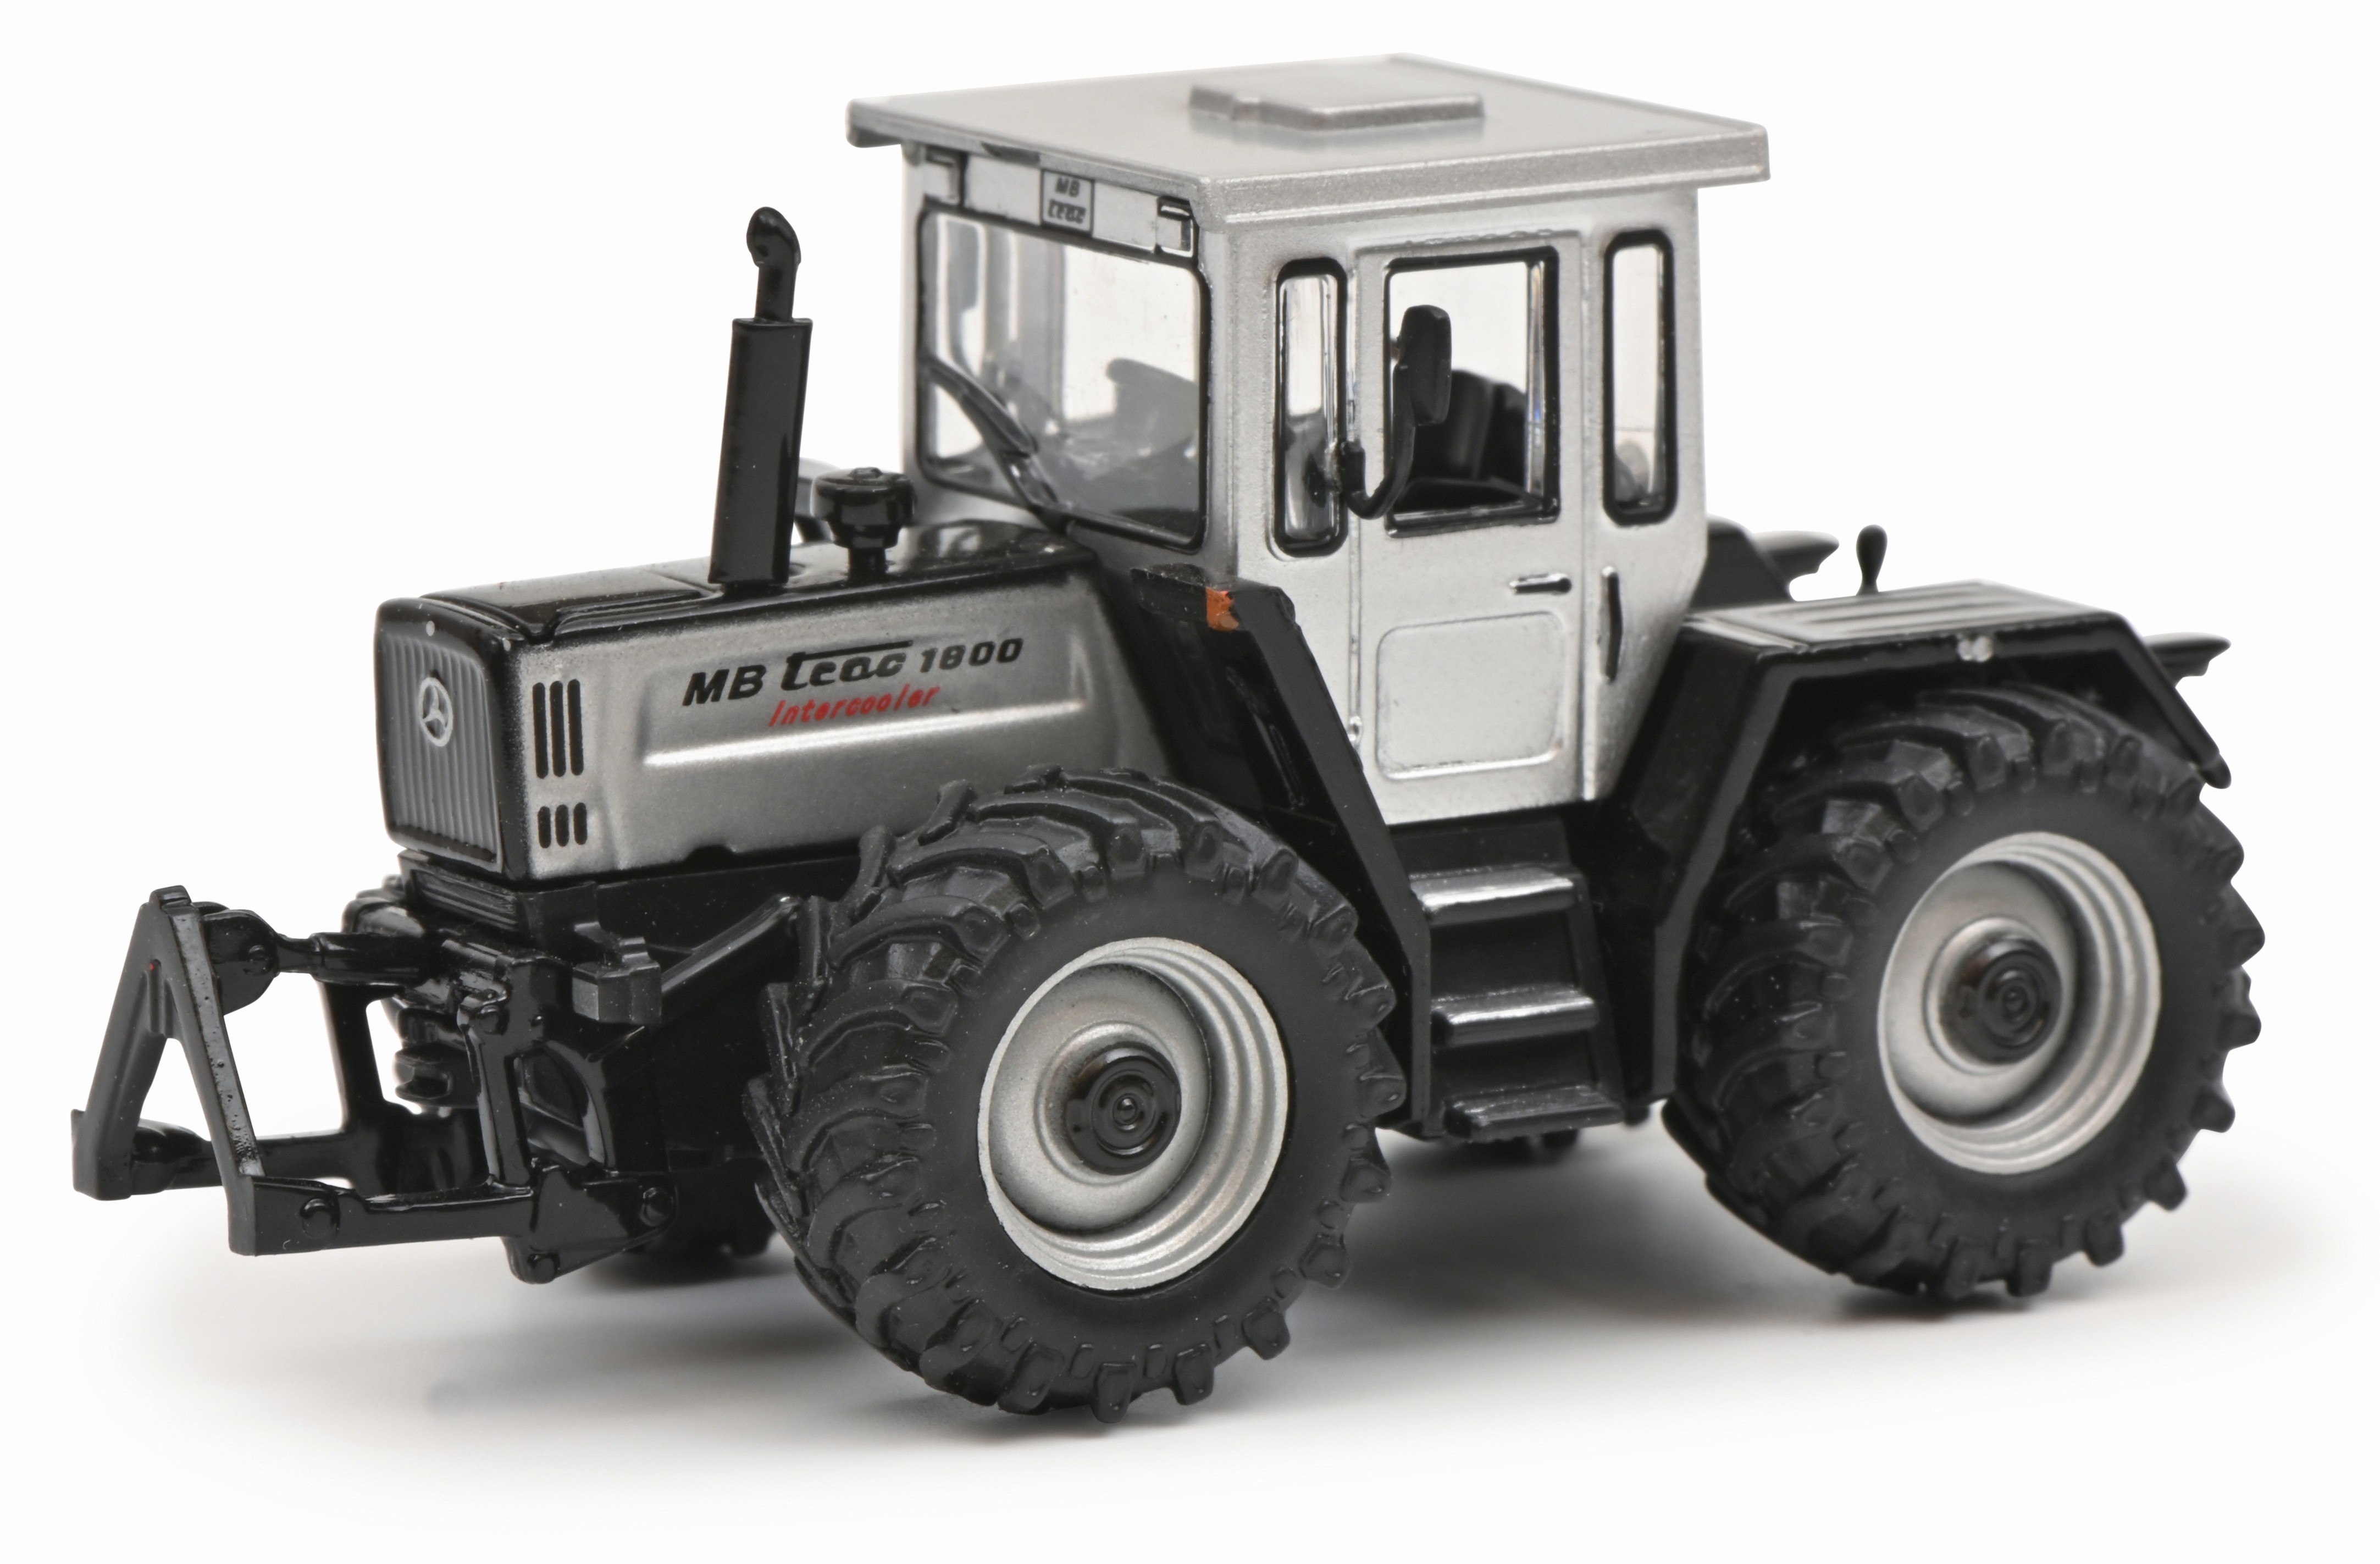 MB Trac 1800 silber/schwarz Traktor 1:87